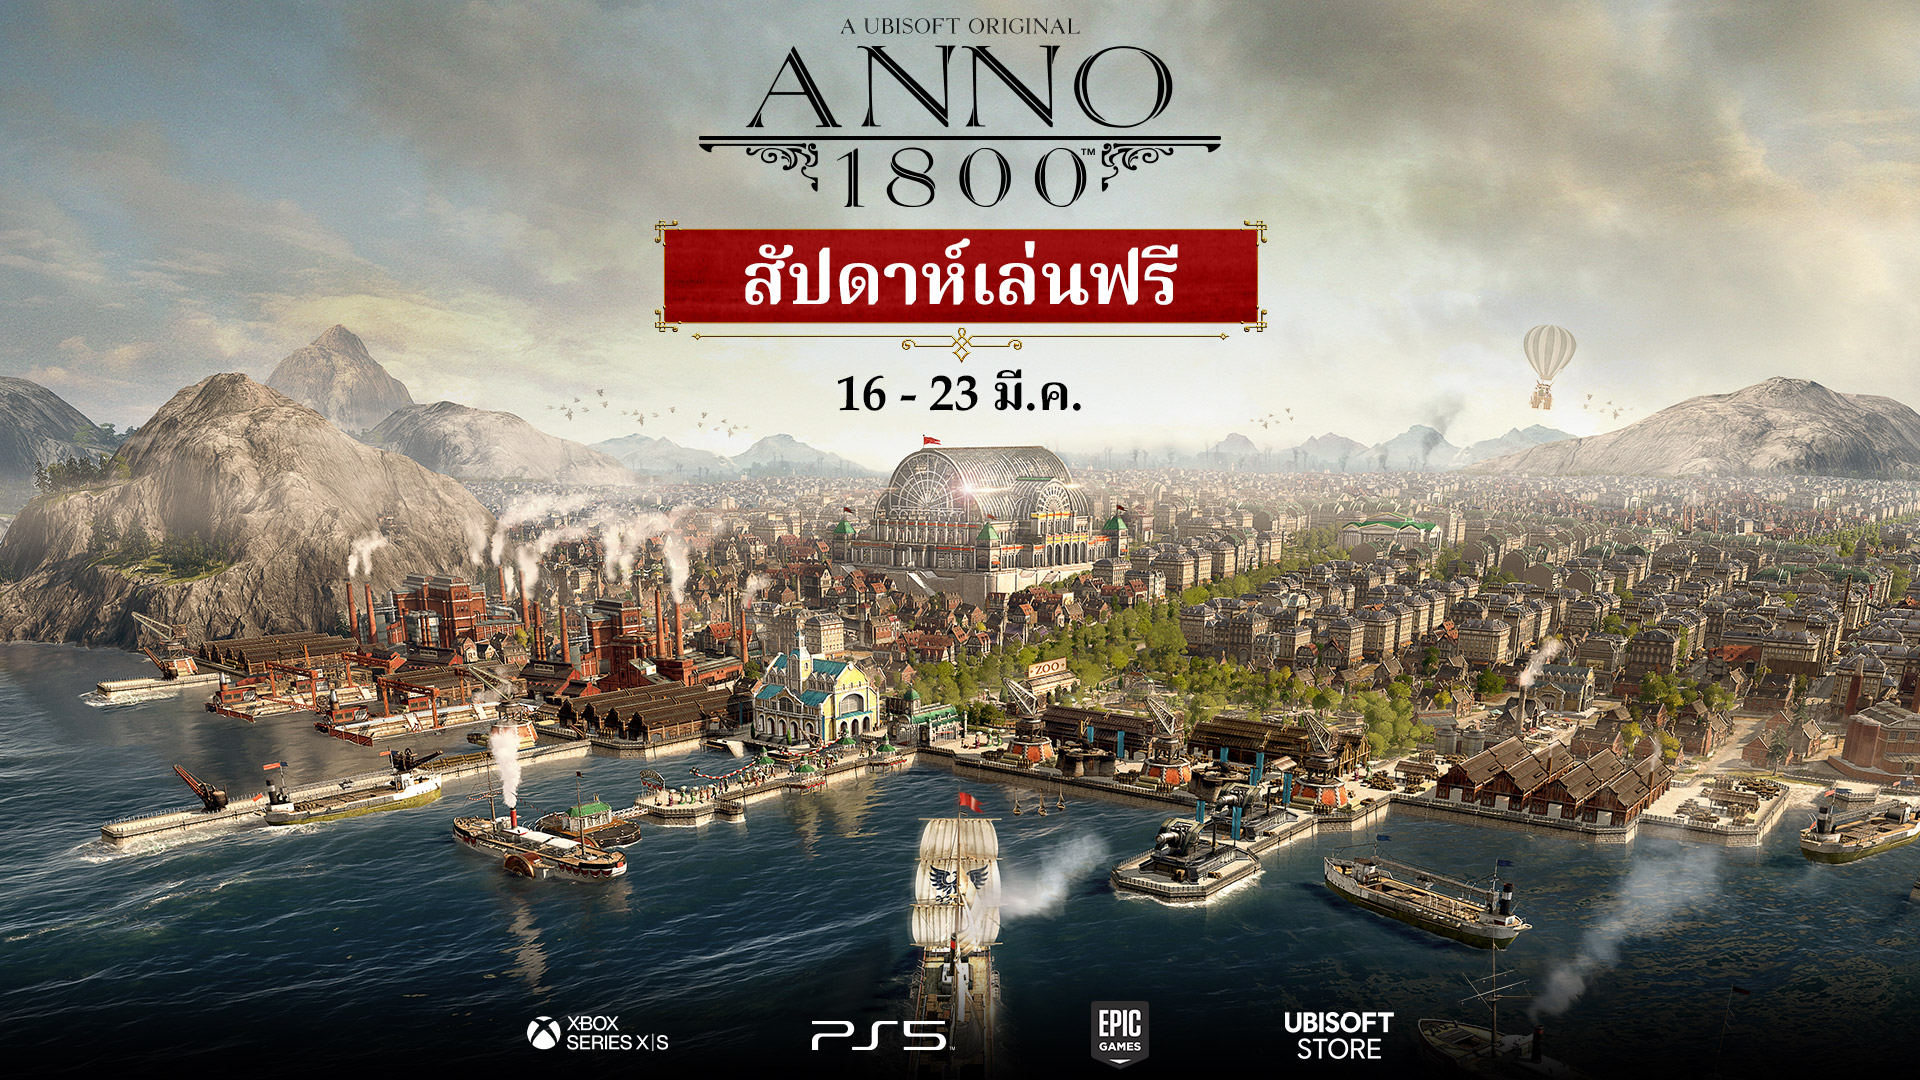 เล่น Anno 1800 ได้ฟรีเป็นครั้งแรก บนพีซีและคอนโซล ระหว่าง 16 - 23 มีนาคม 